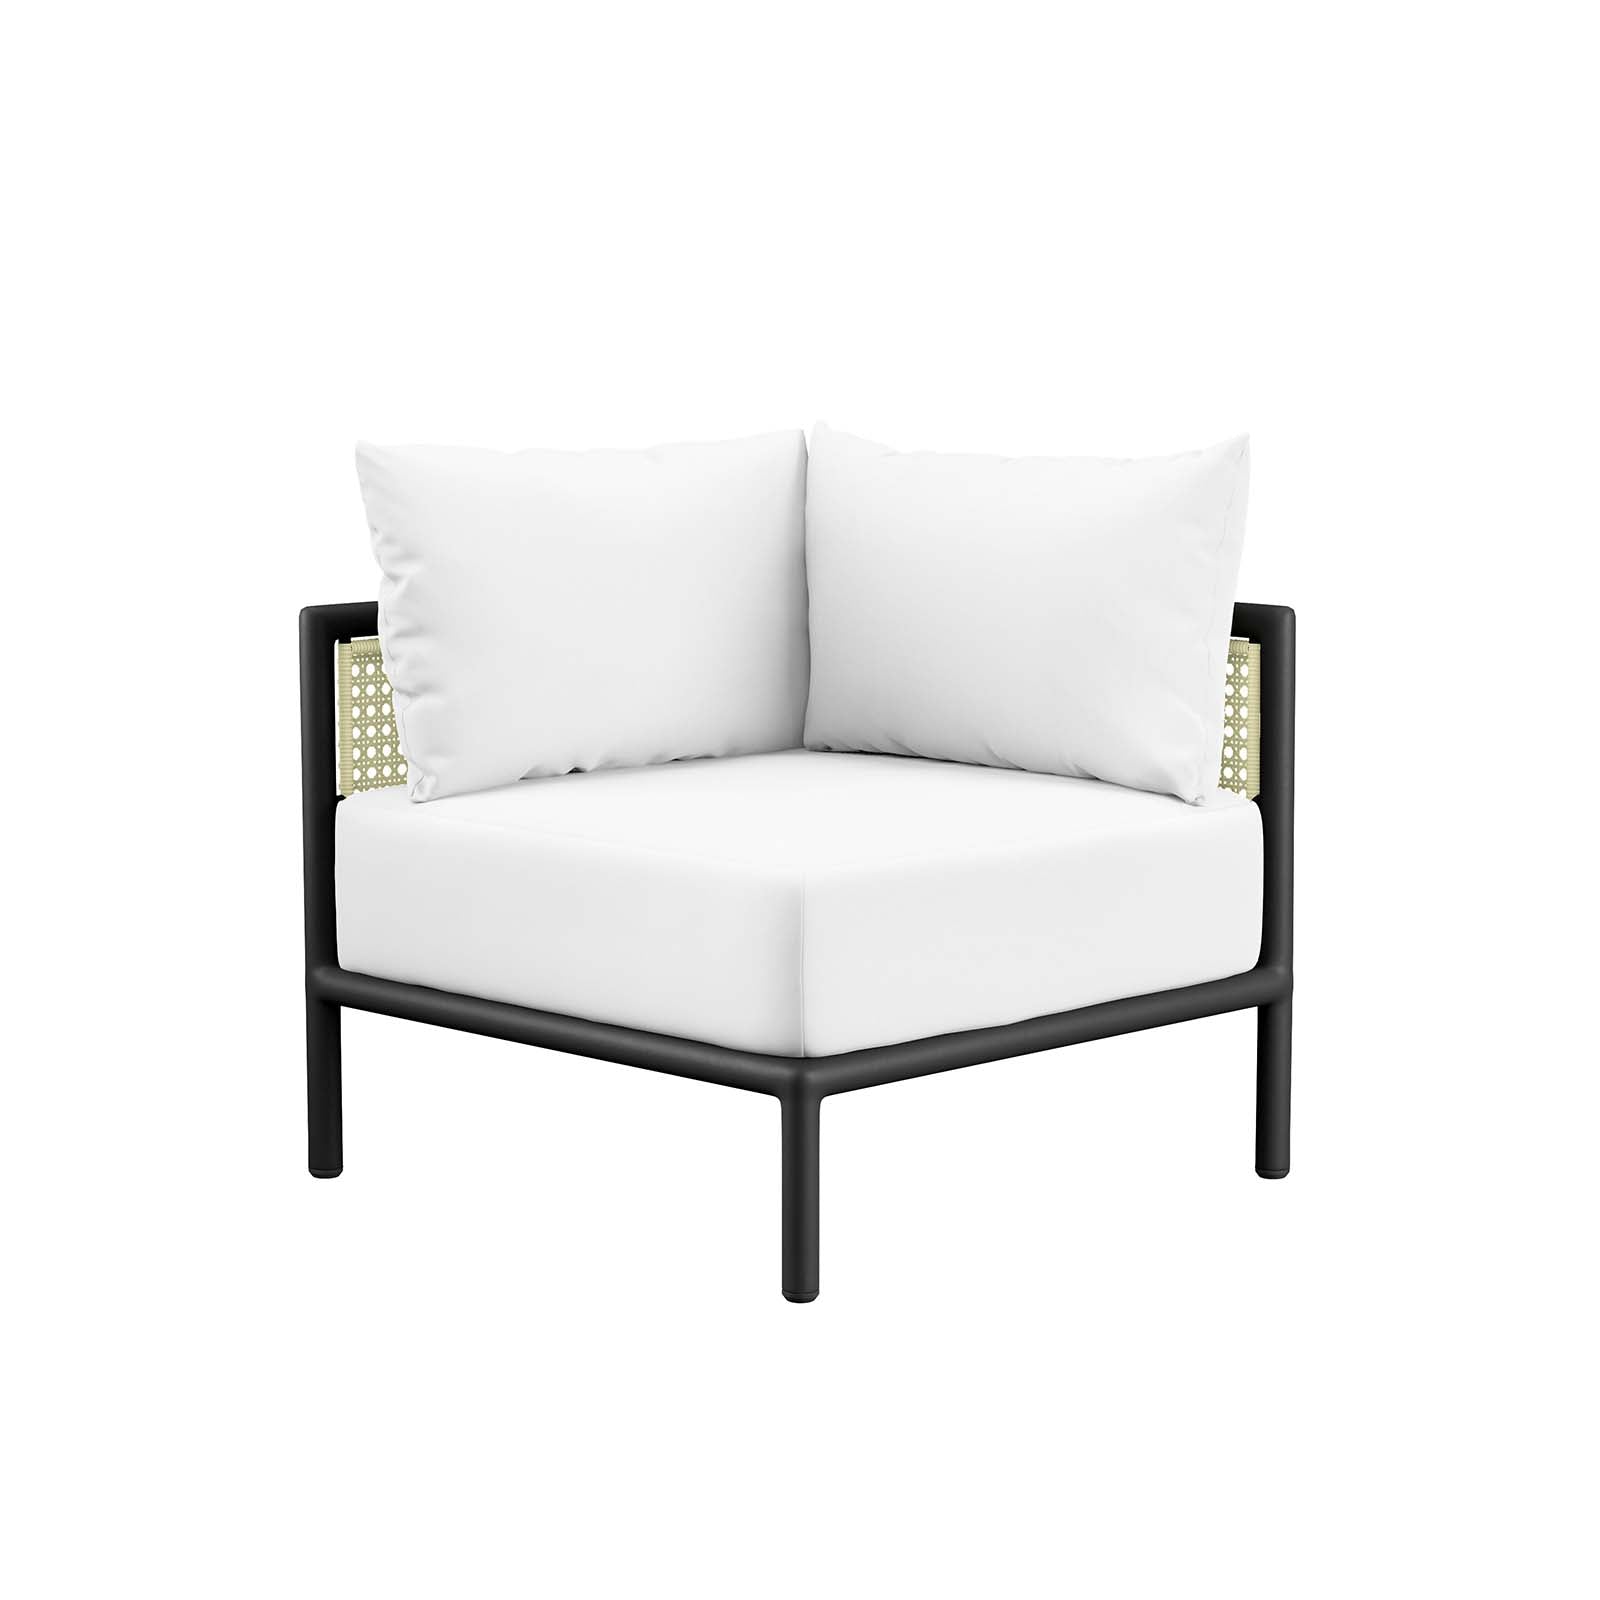 Modway - Hanalei Outdoor Patio Corner Chair - EEI-5019